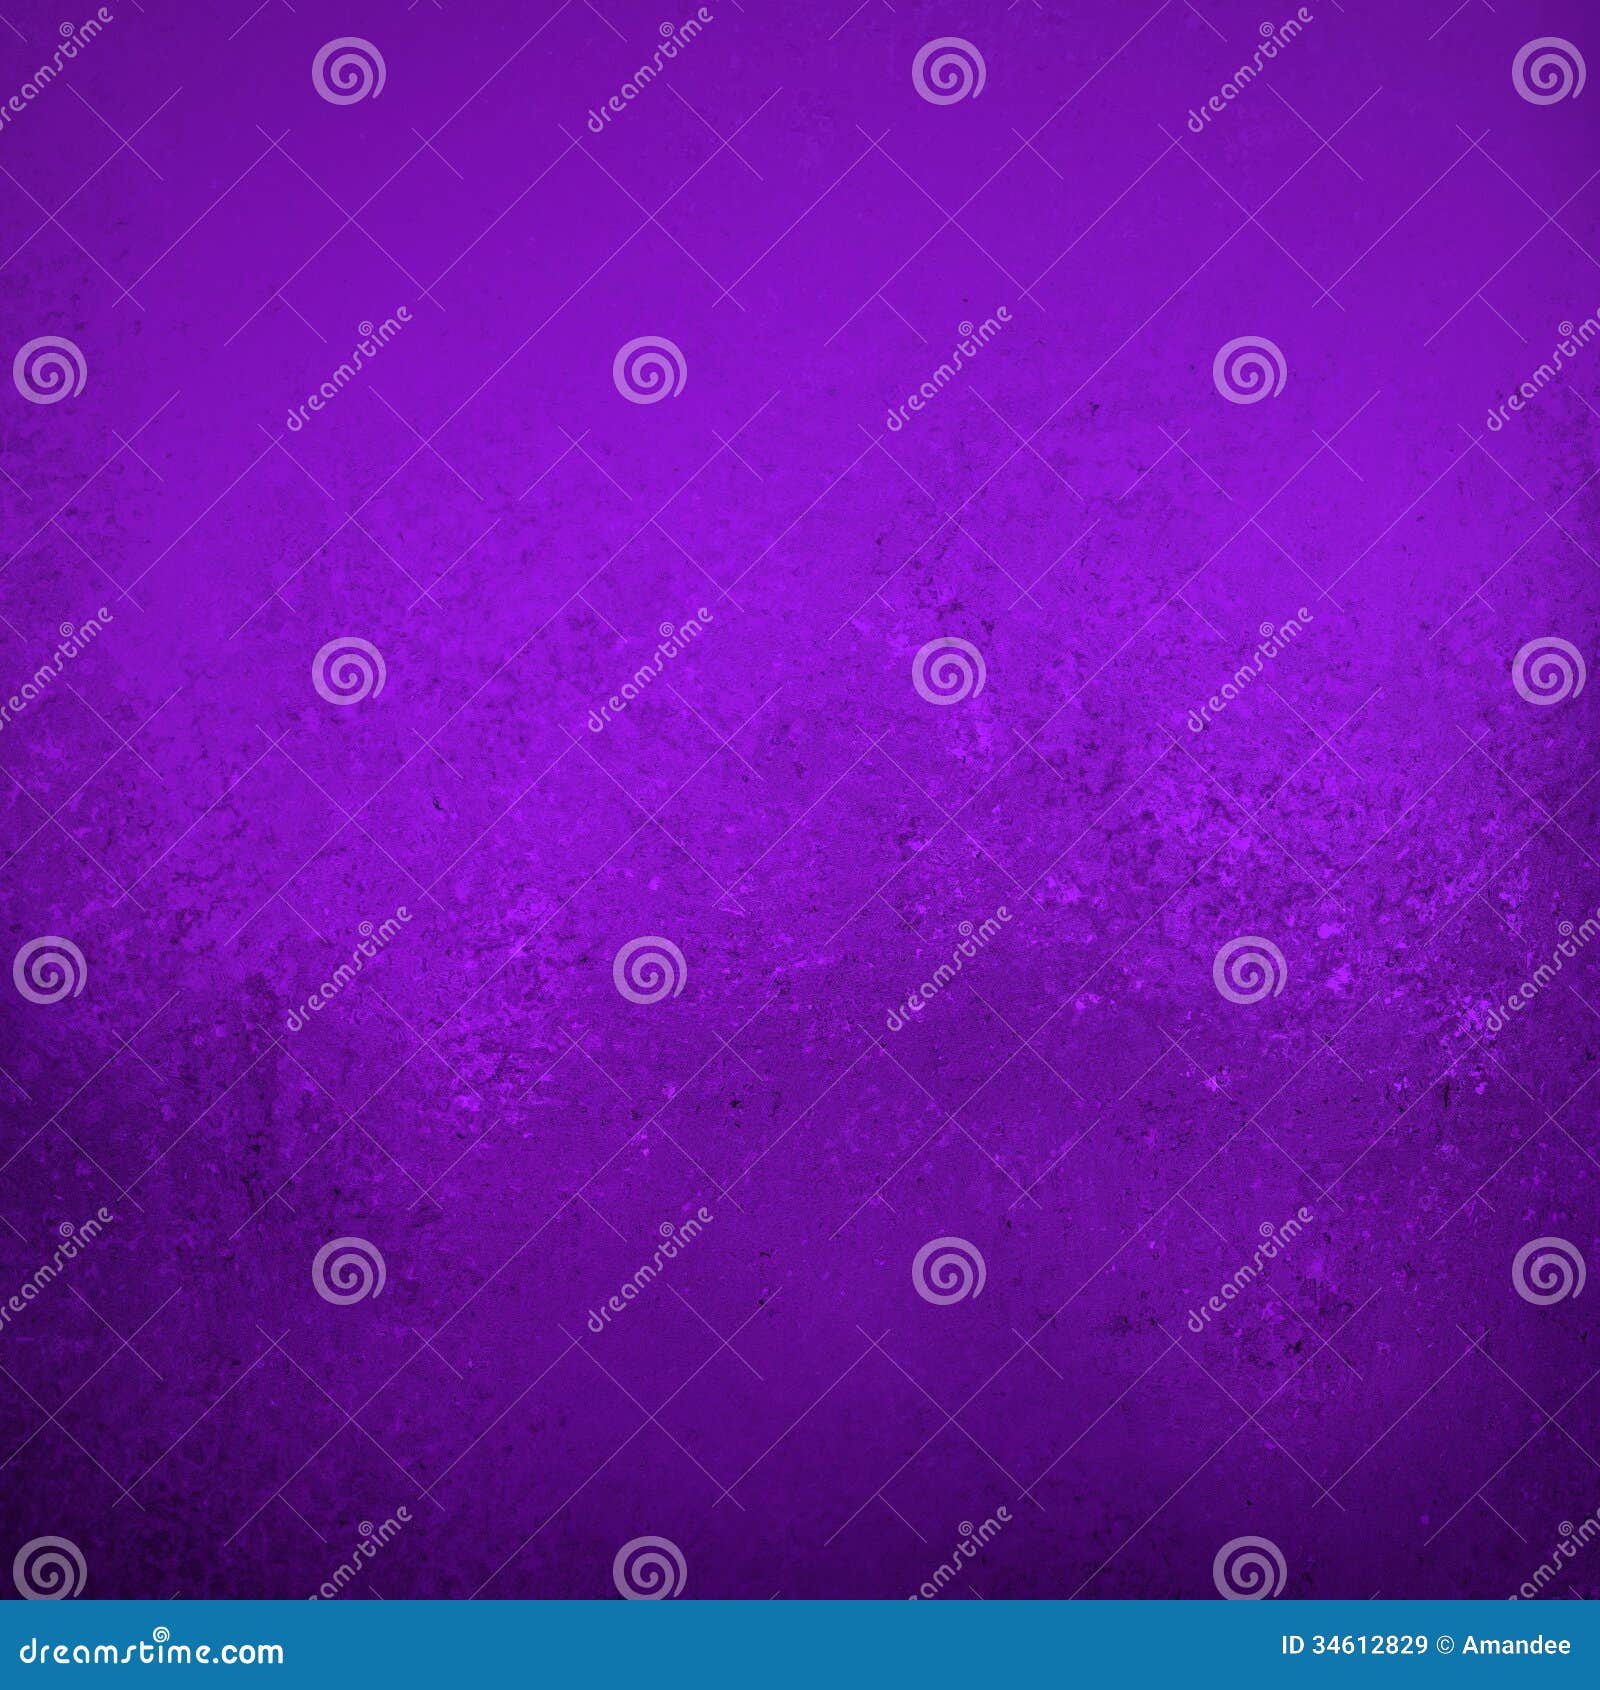 purple blue grunge background texture